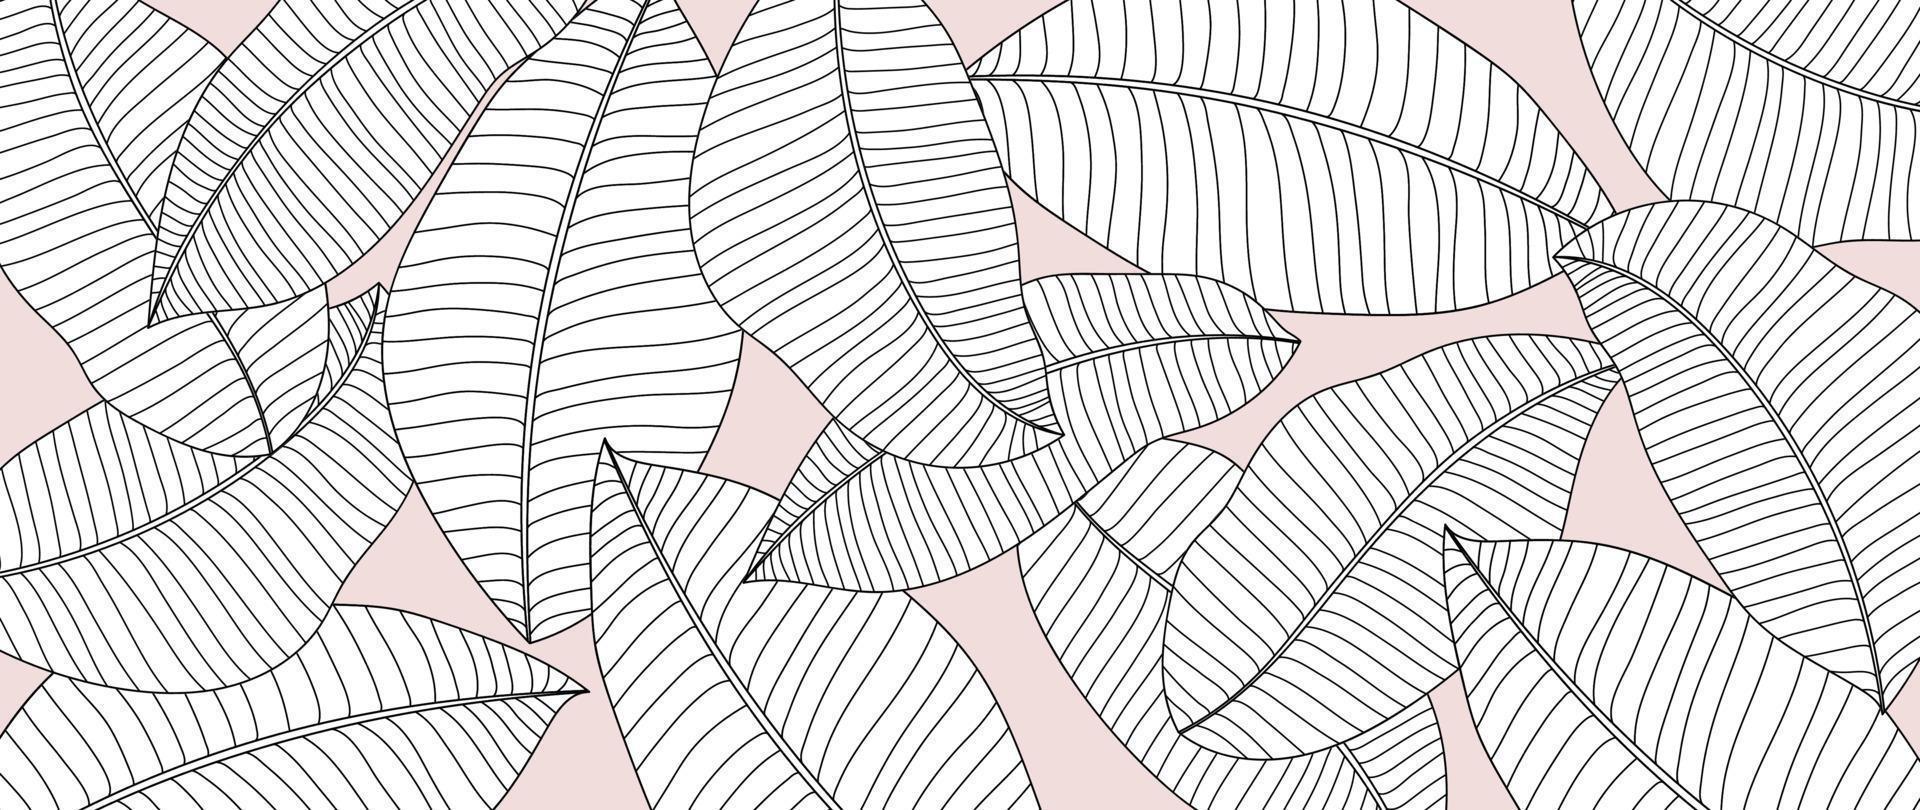 vetor de fundo de ramo de folha de arte de linha desenhada à mão. folhas de palmeira botânica tropical com fundo de estilo simples de contorno de desenho branco preto. ilustração de design para impressões, papel de parede, pôster, cartão.